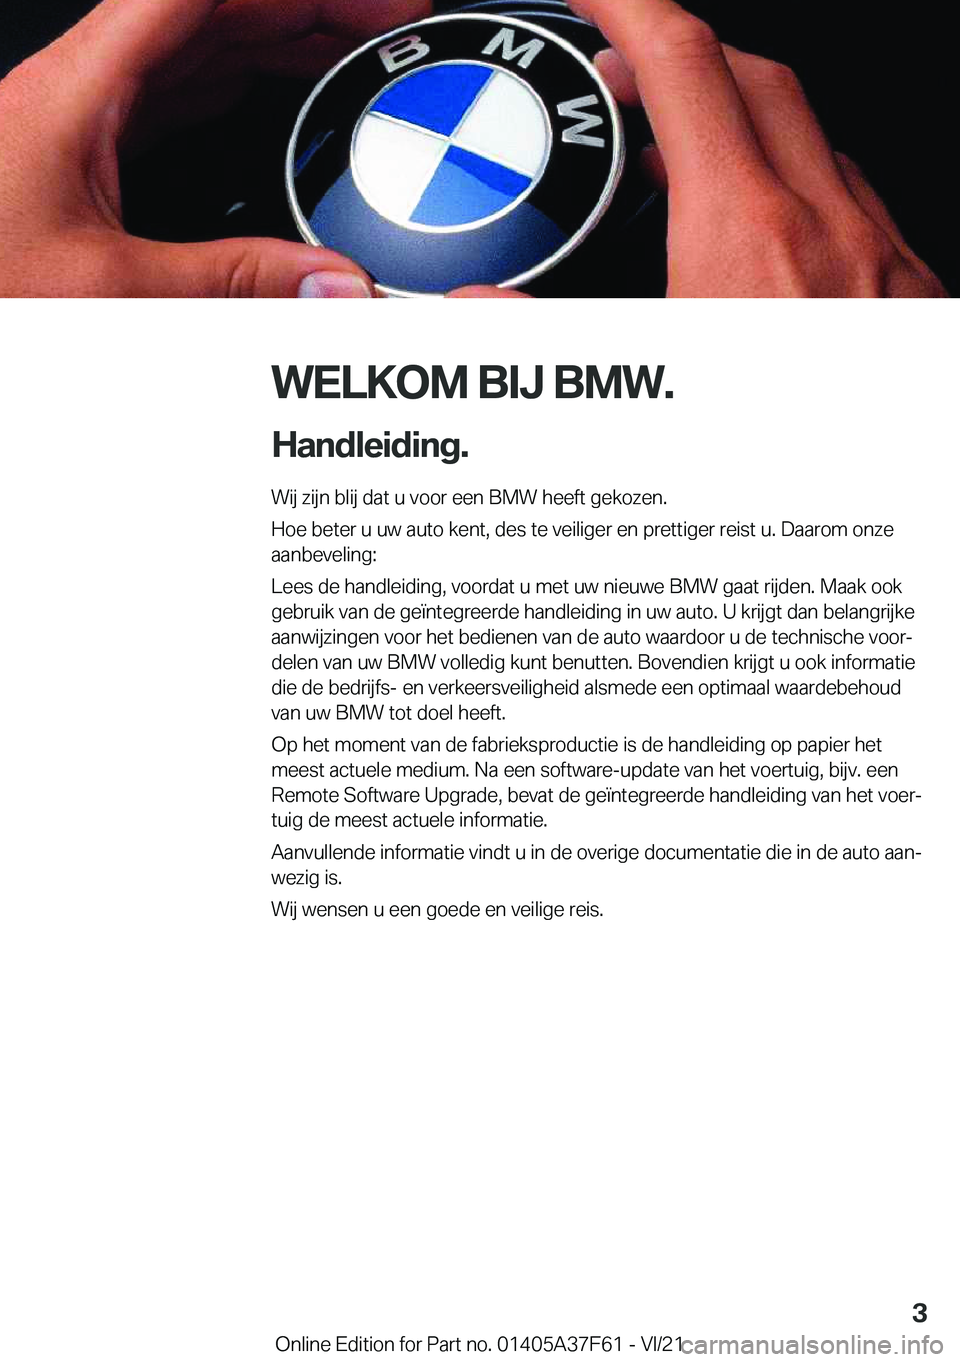 BMW M3 2022  Instructieboekjes (in Dutch) �W�E�L�K�O�M��B�I�J��B�M�W�.
�H�a�n�d�l�e�i�d�i�n�g�. �W�i�j��z�i�j�n��b�l�i�j��d�a�t��u��v�o�o�r��e�e�n��B�M�W��h�e�e�f�t��g�e�k�o�z�e�n�.
�H�o�e��b�e�t�e�r��u��u�w��a�u�t�o��k�e�n�t�